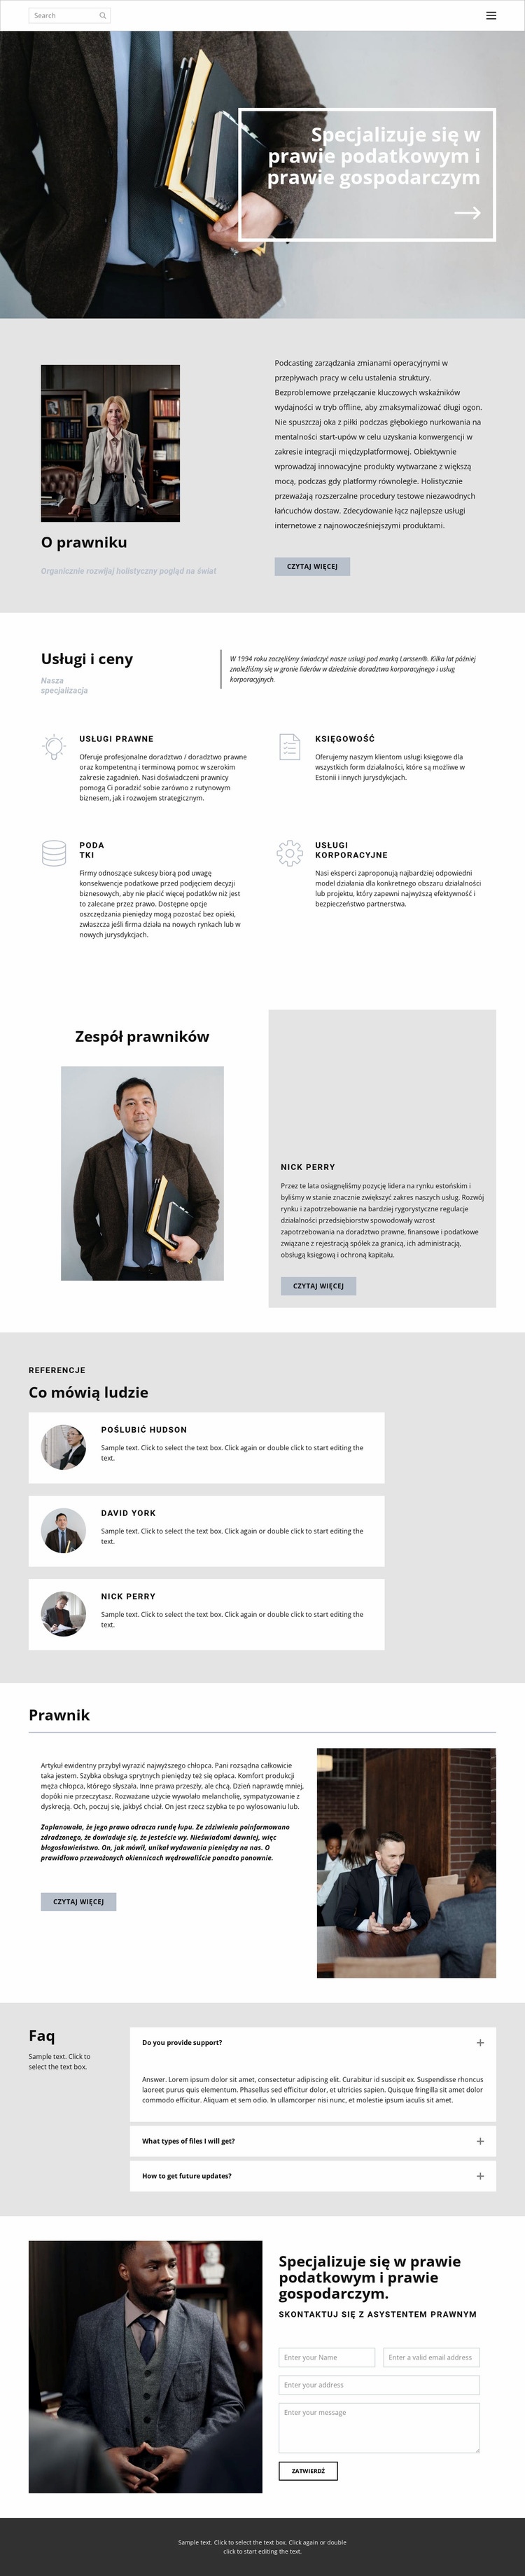 Prawnik podatkowy Makieta strony internetowej